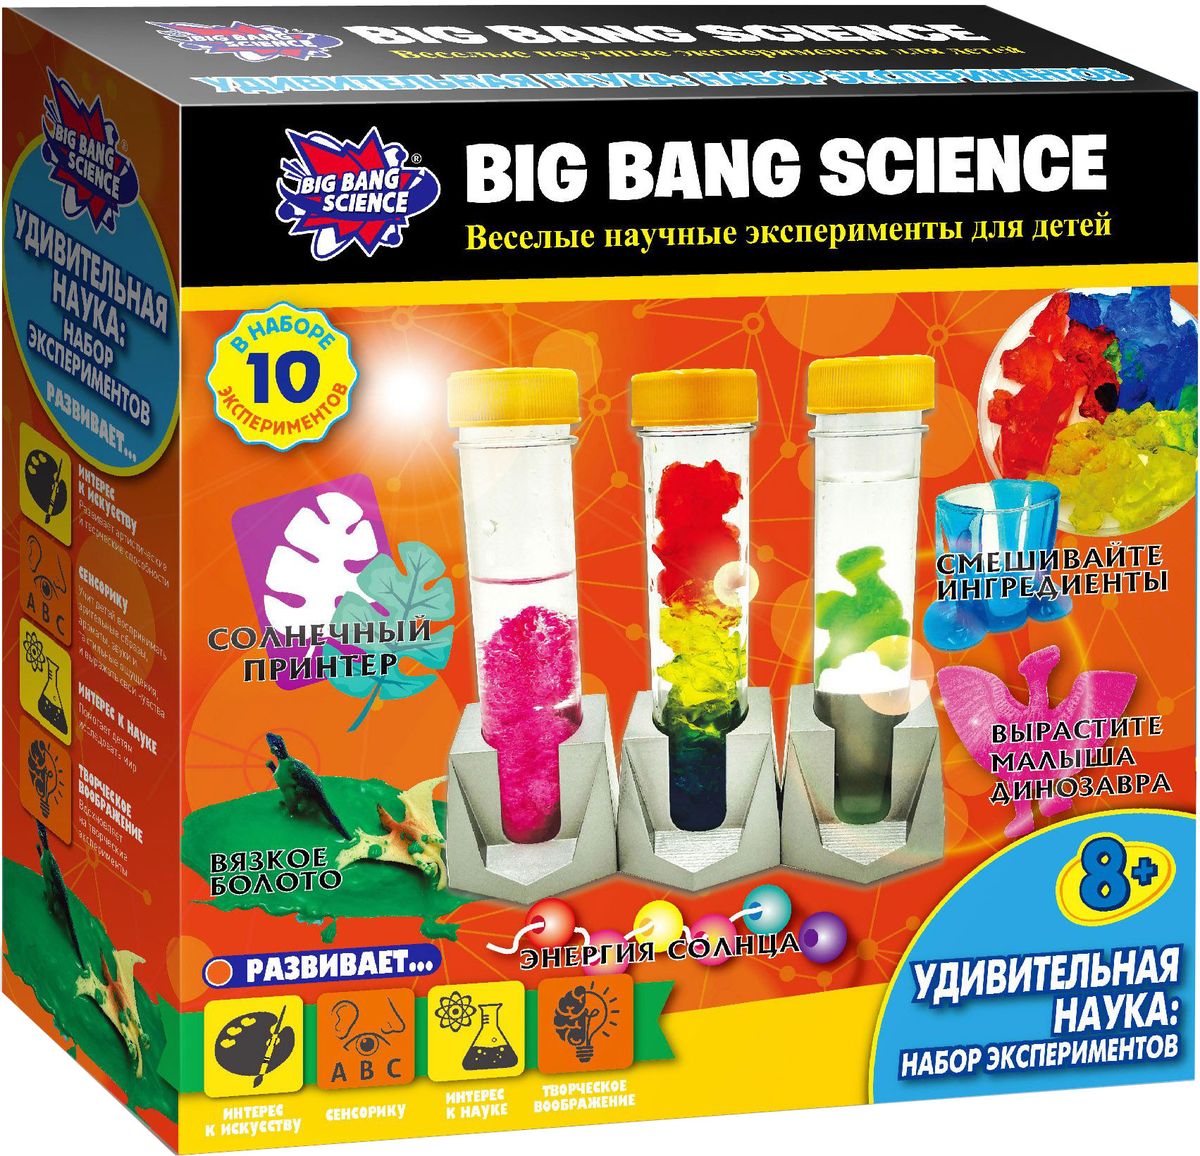 Big Bang Science Набор для опытов Удивительная наука Набор экспериментов